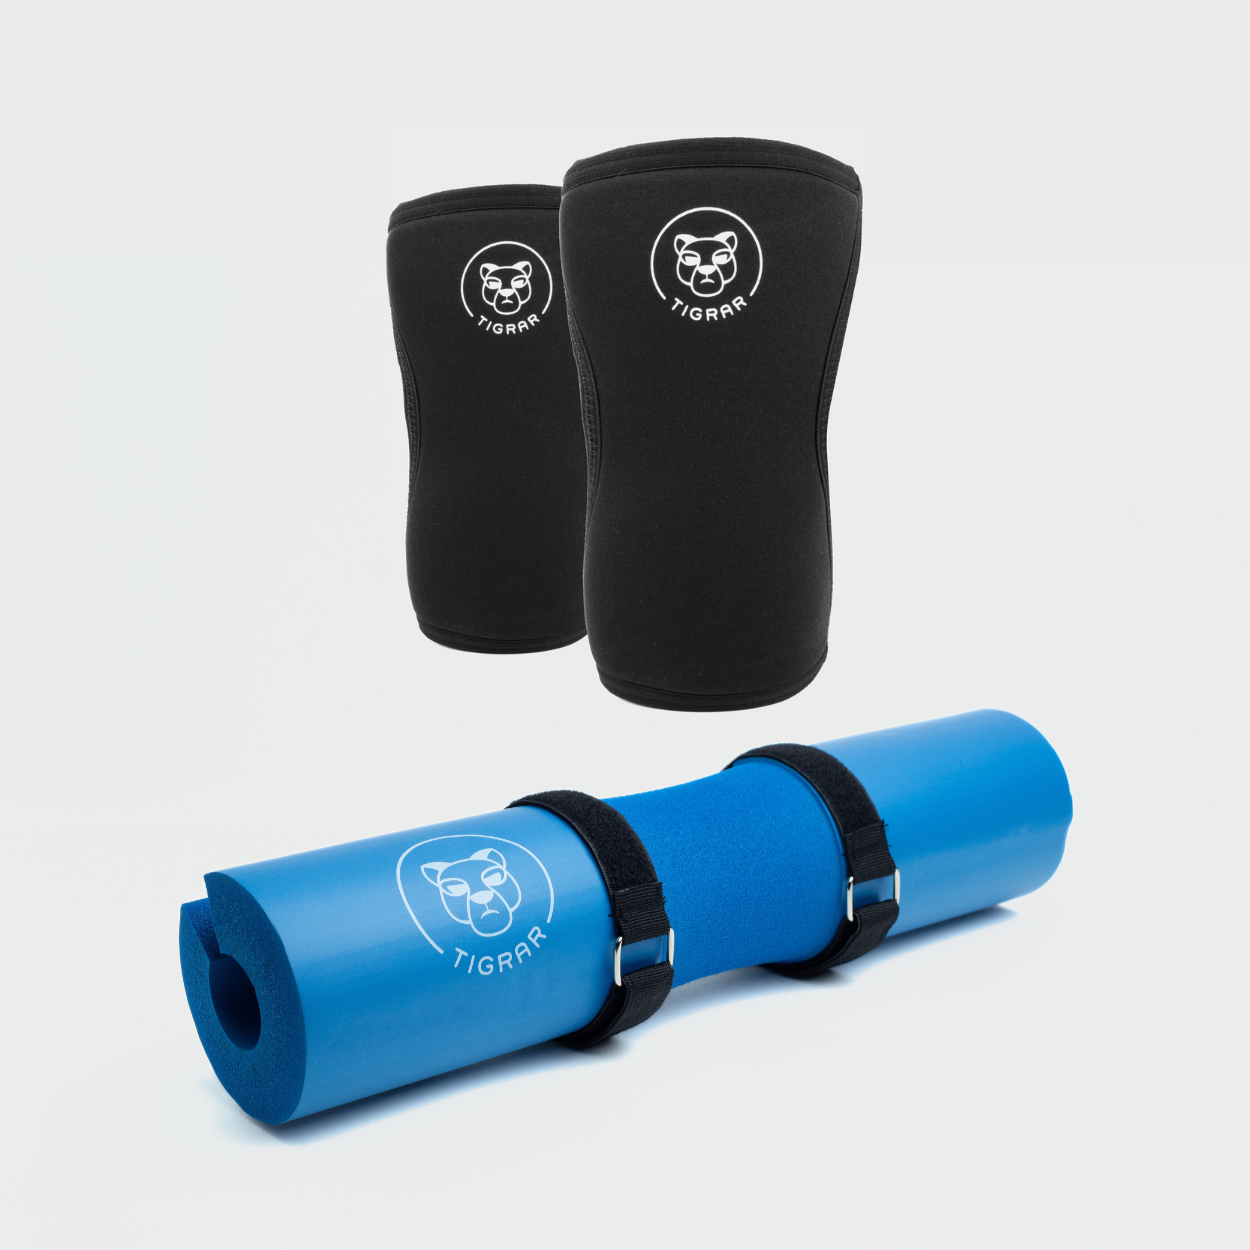 Optimaliseer je krachttraining met Tigrar's zwarte knee sleeves en blauwe barbell pad, een essentiële set voor bescherming en comfort tijdens elke oefening.